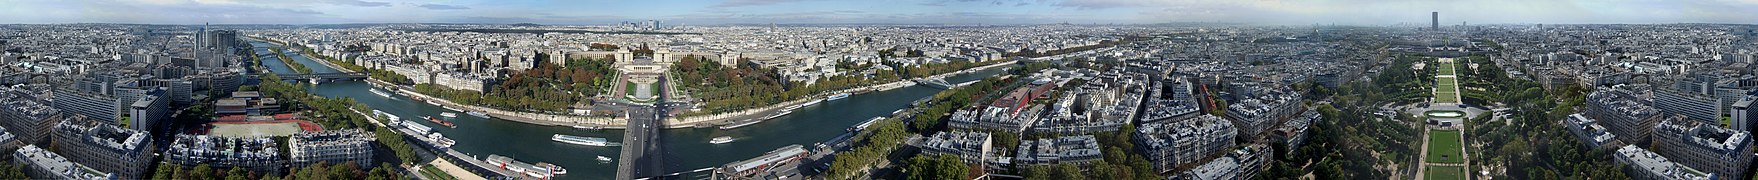 Panorama à 360° de Paris, photographié depuis la Tour Eiffel.